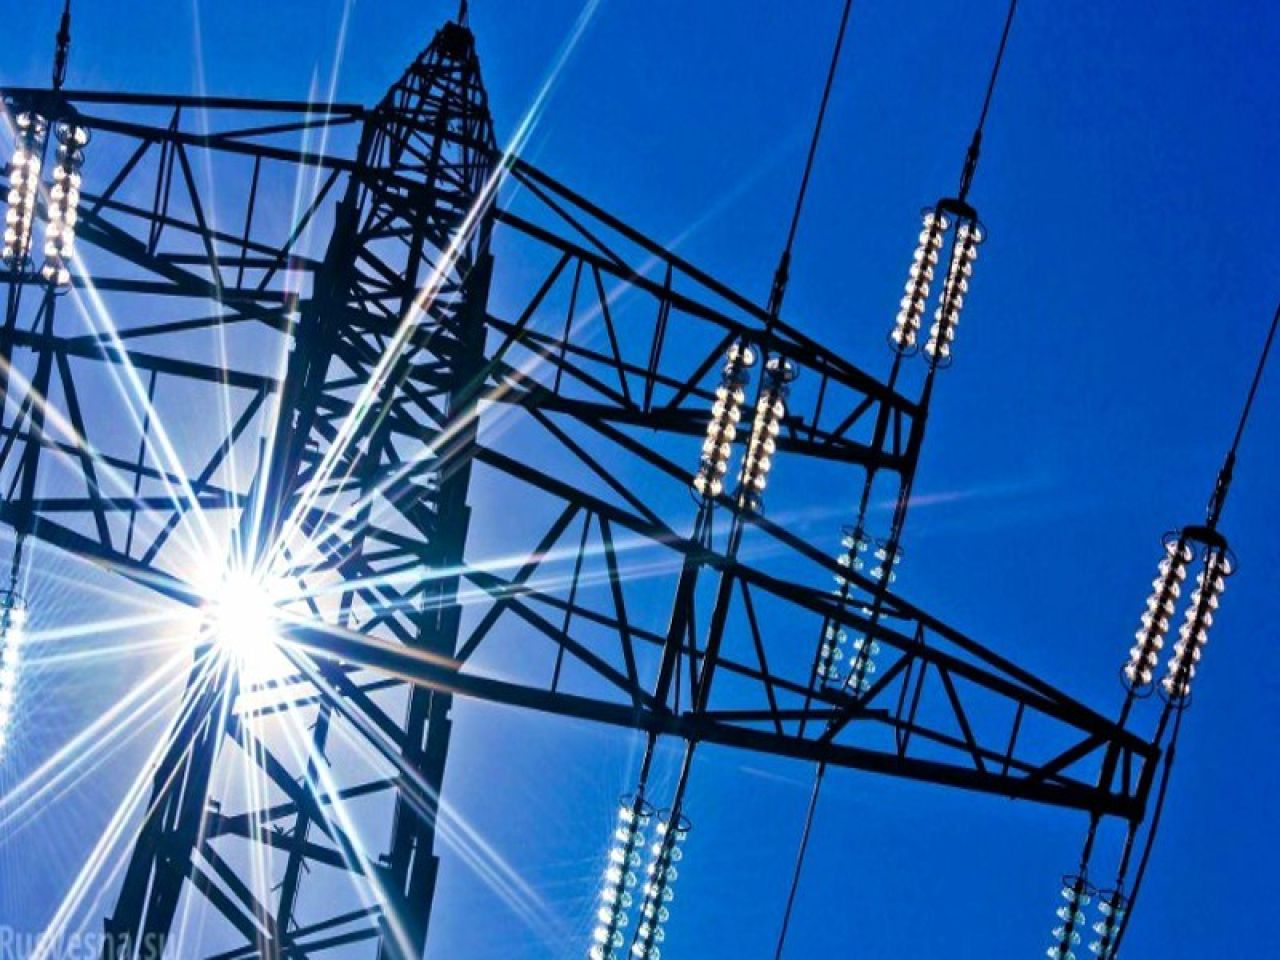 Հայաստանում նախորդ տարի արտադրվել է 8.8 մլրդ կՎտժ էլեկտրաէներգիա, 9 տոկոսը բաժին է ընկել արևային կայաններին